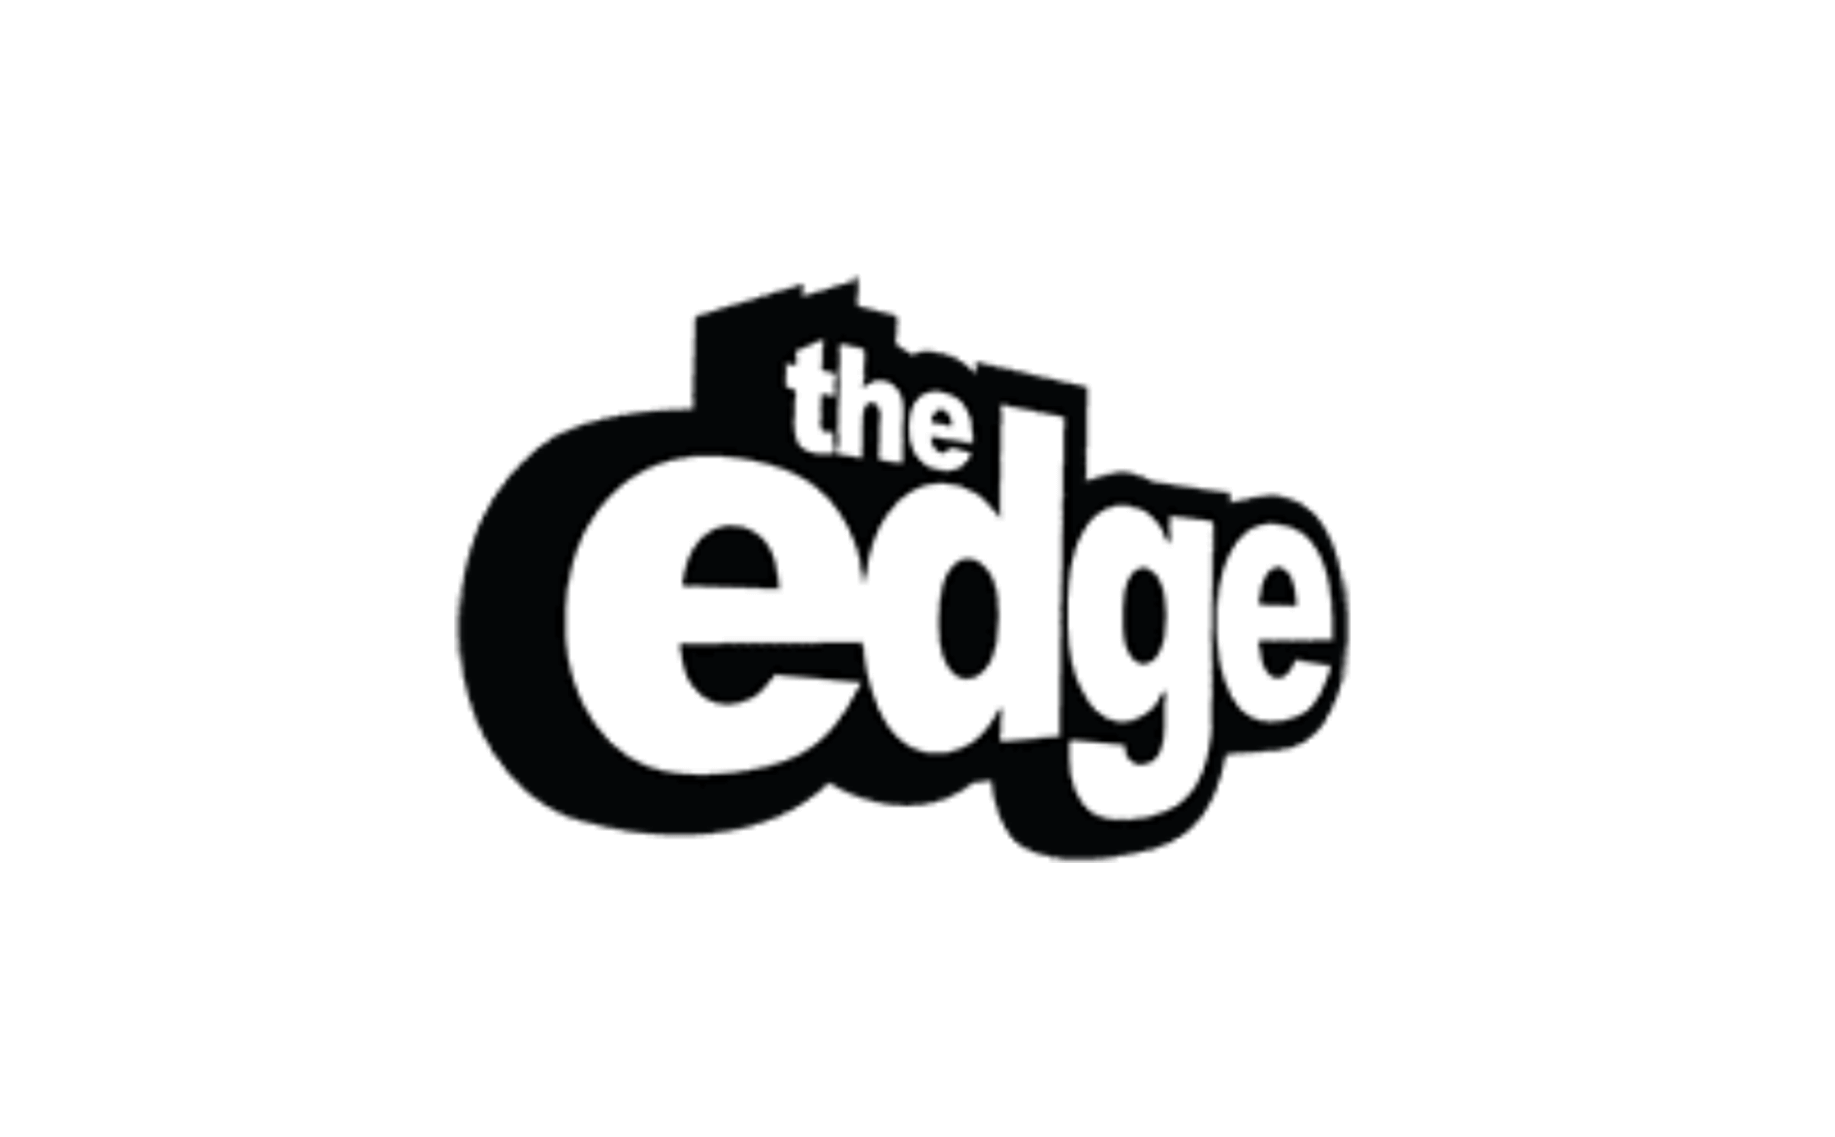 The Edge® Website